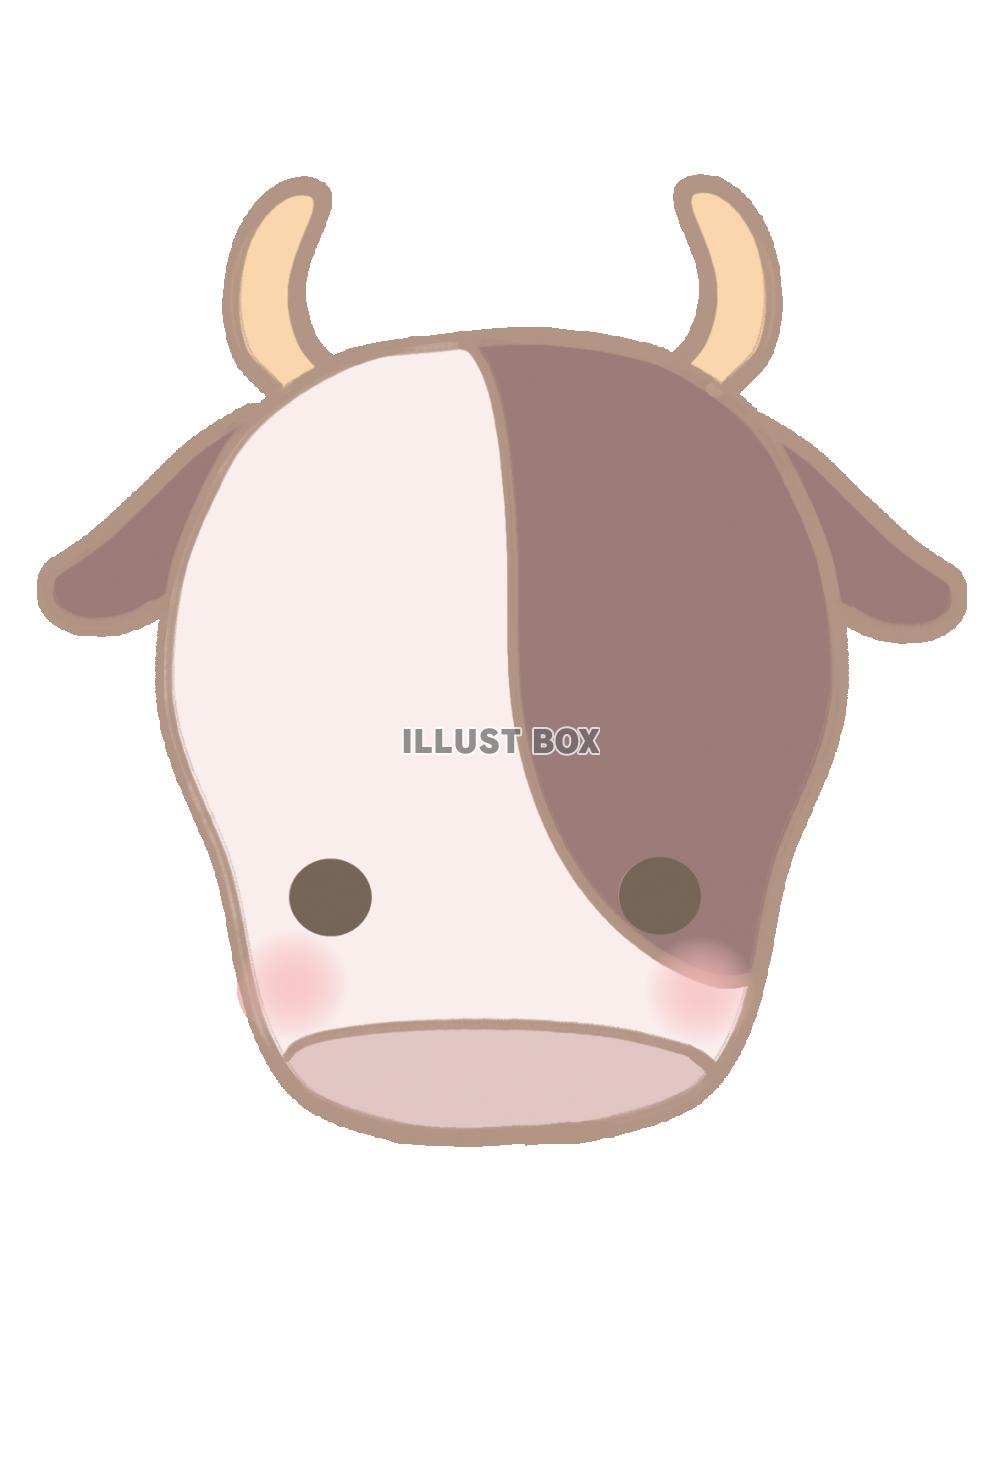 牛の顔のイラスト